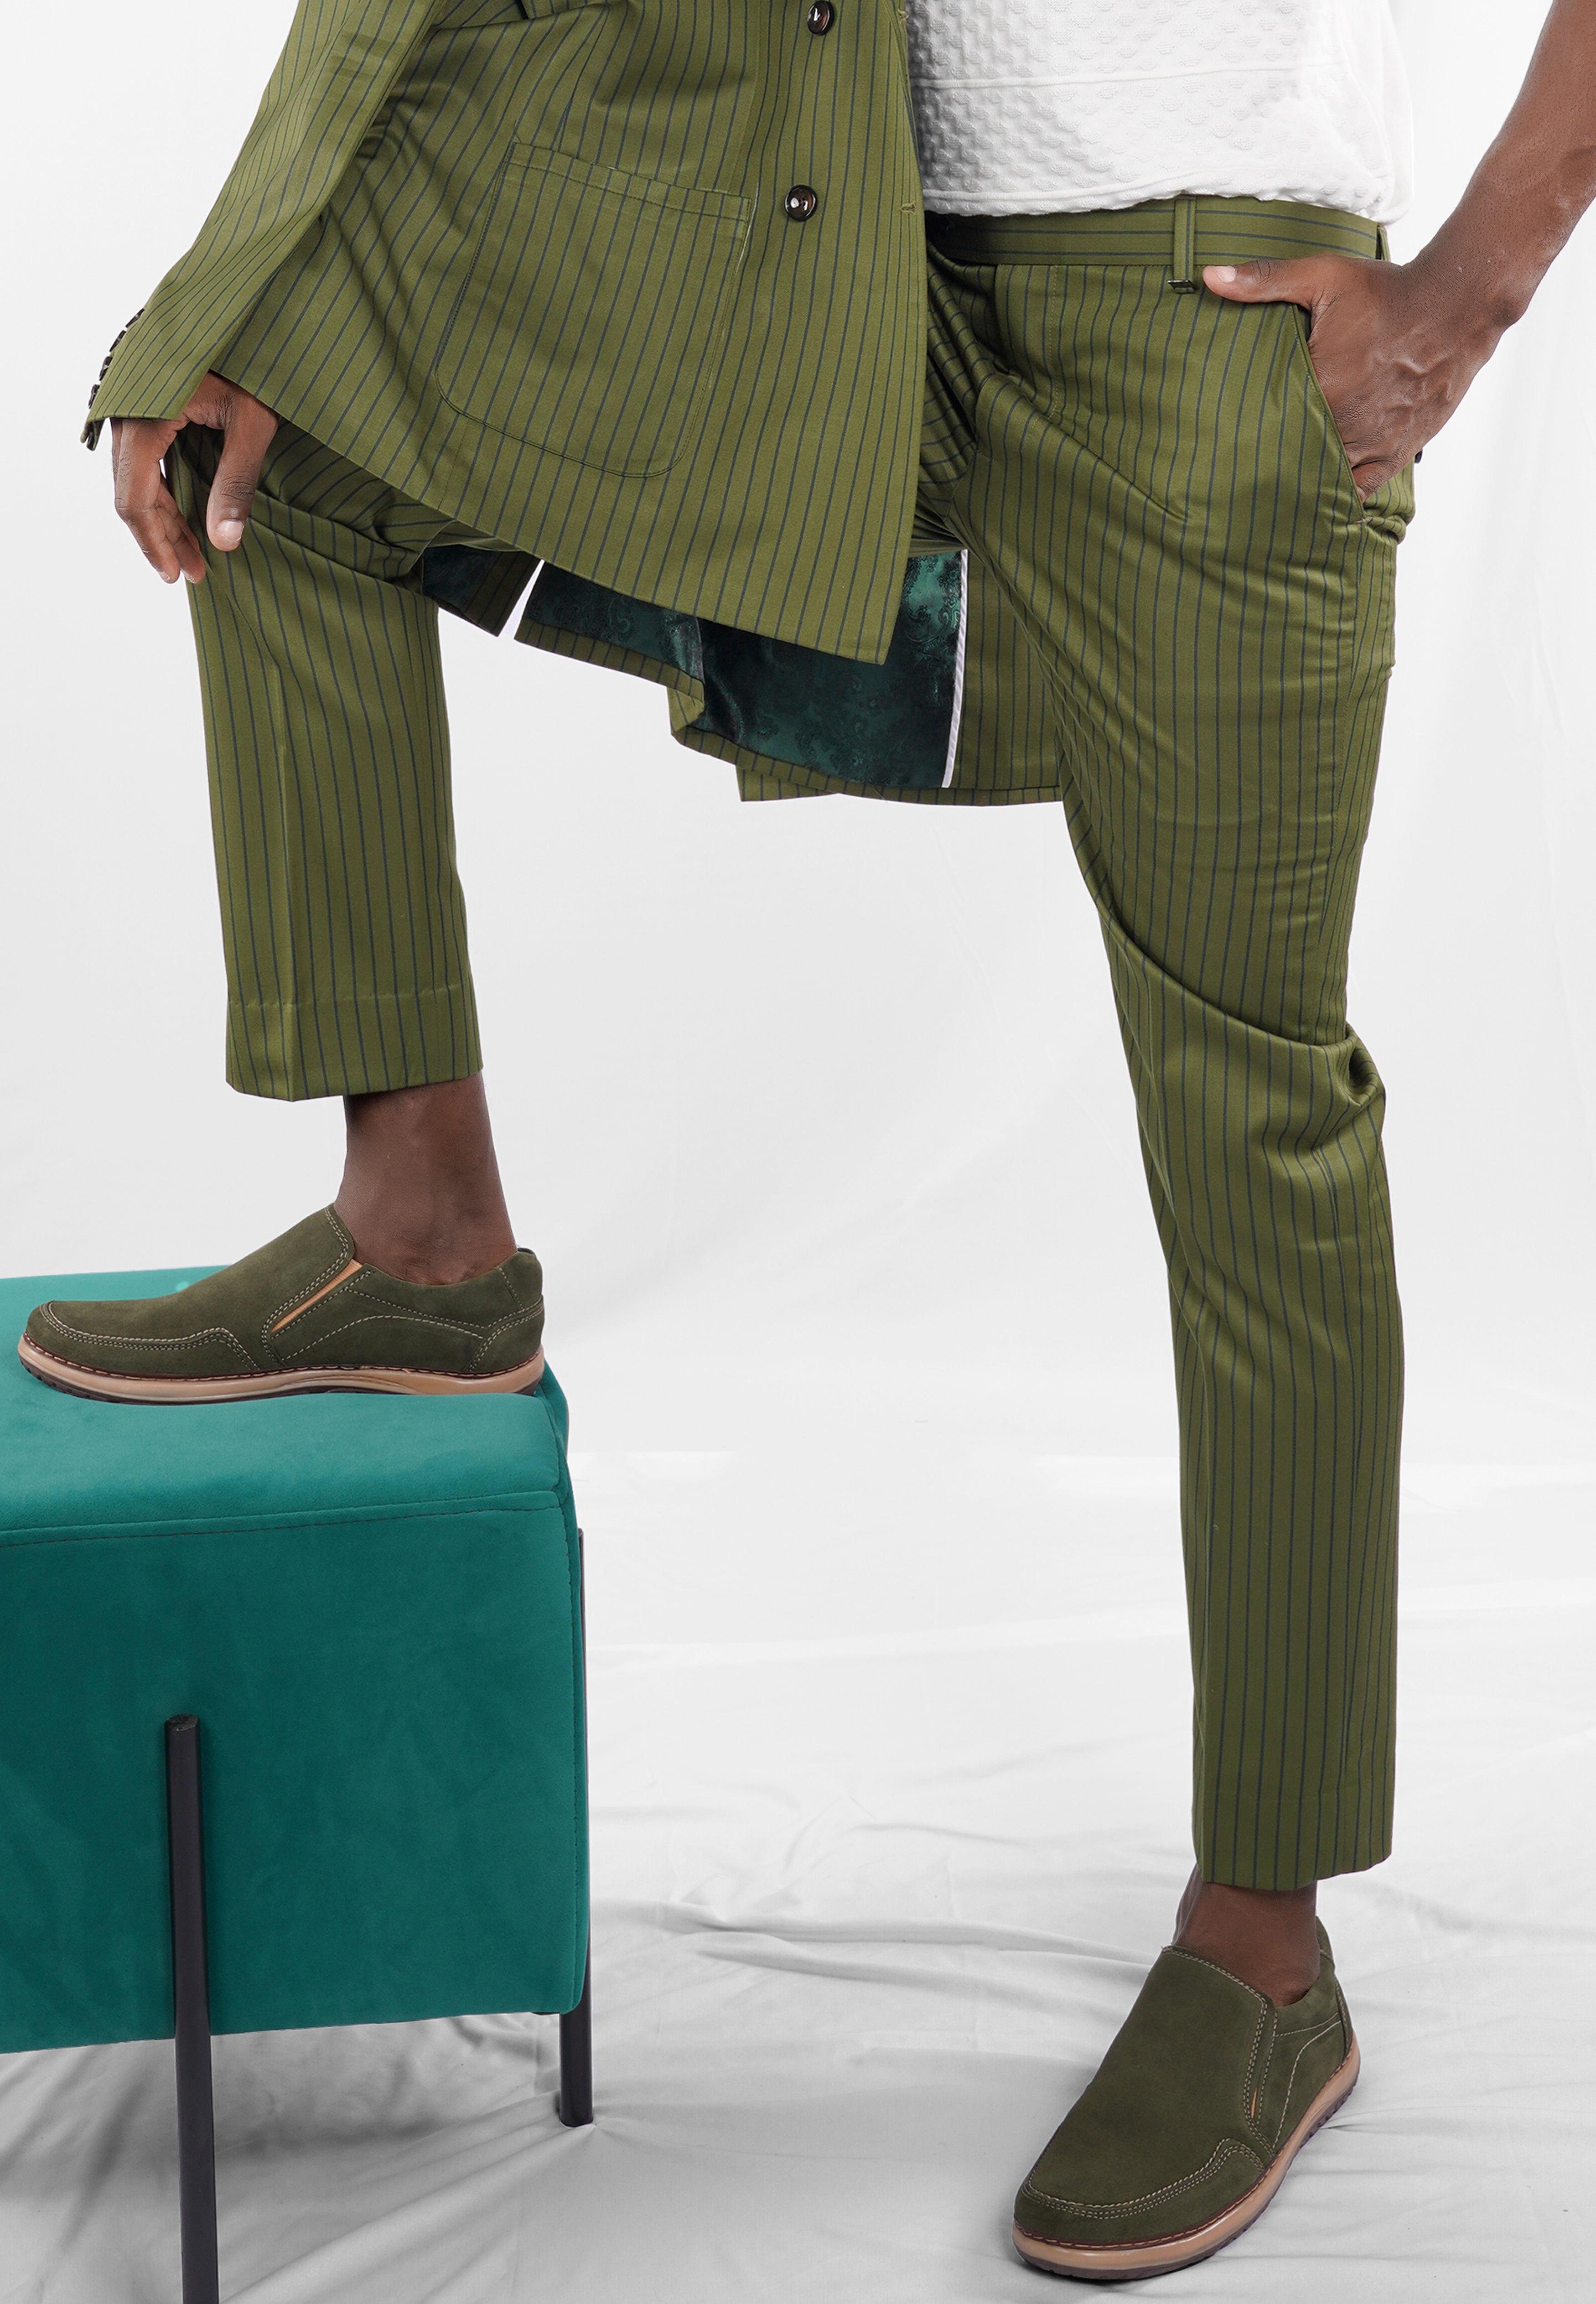 Hemlock Green Striped Pant T2705-28, T2705-30, T2705-32, T2705-34, T2705-36, T2705-38, T2705-40, T2705-42, T2705-44